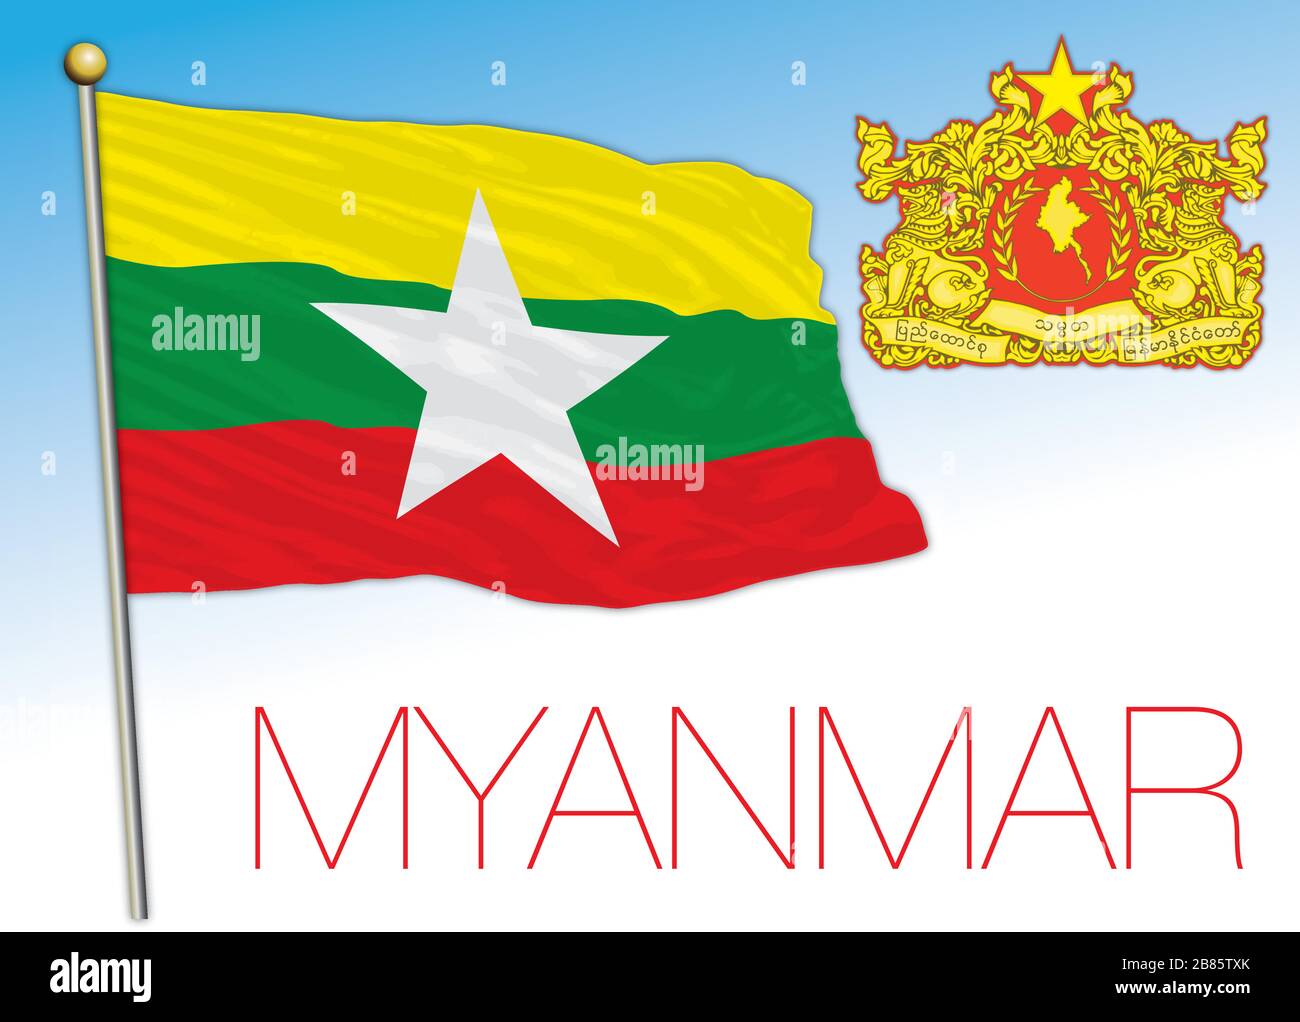 Offizielle Nationalflaggen und -Wappen Myanmars, asiatisches Land, Vektorgrafiken Stock Vektor